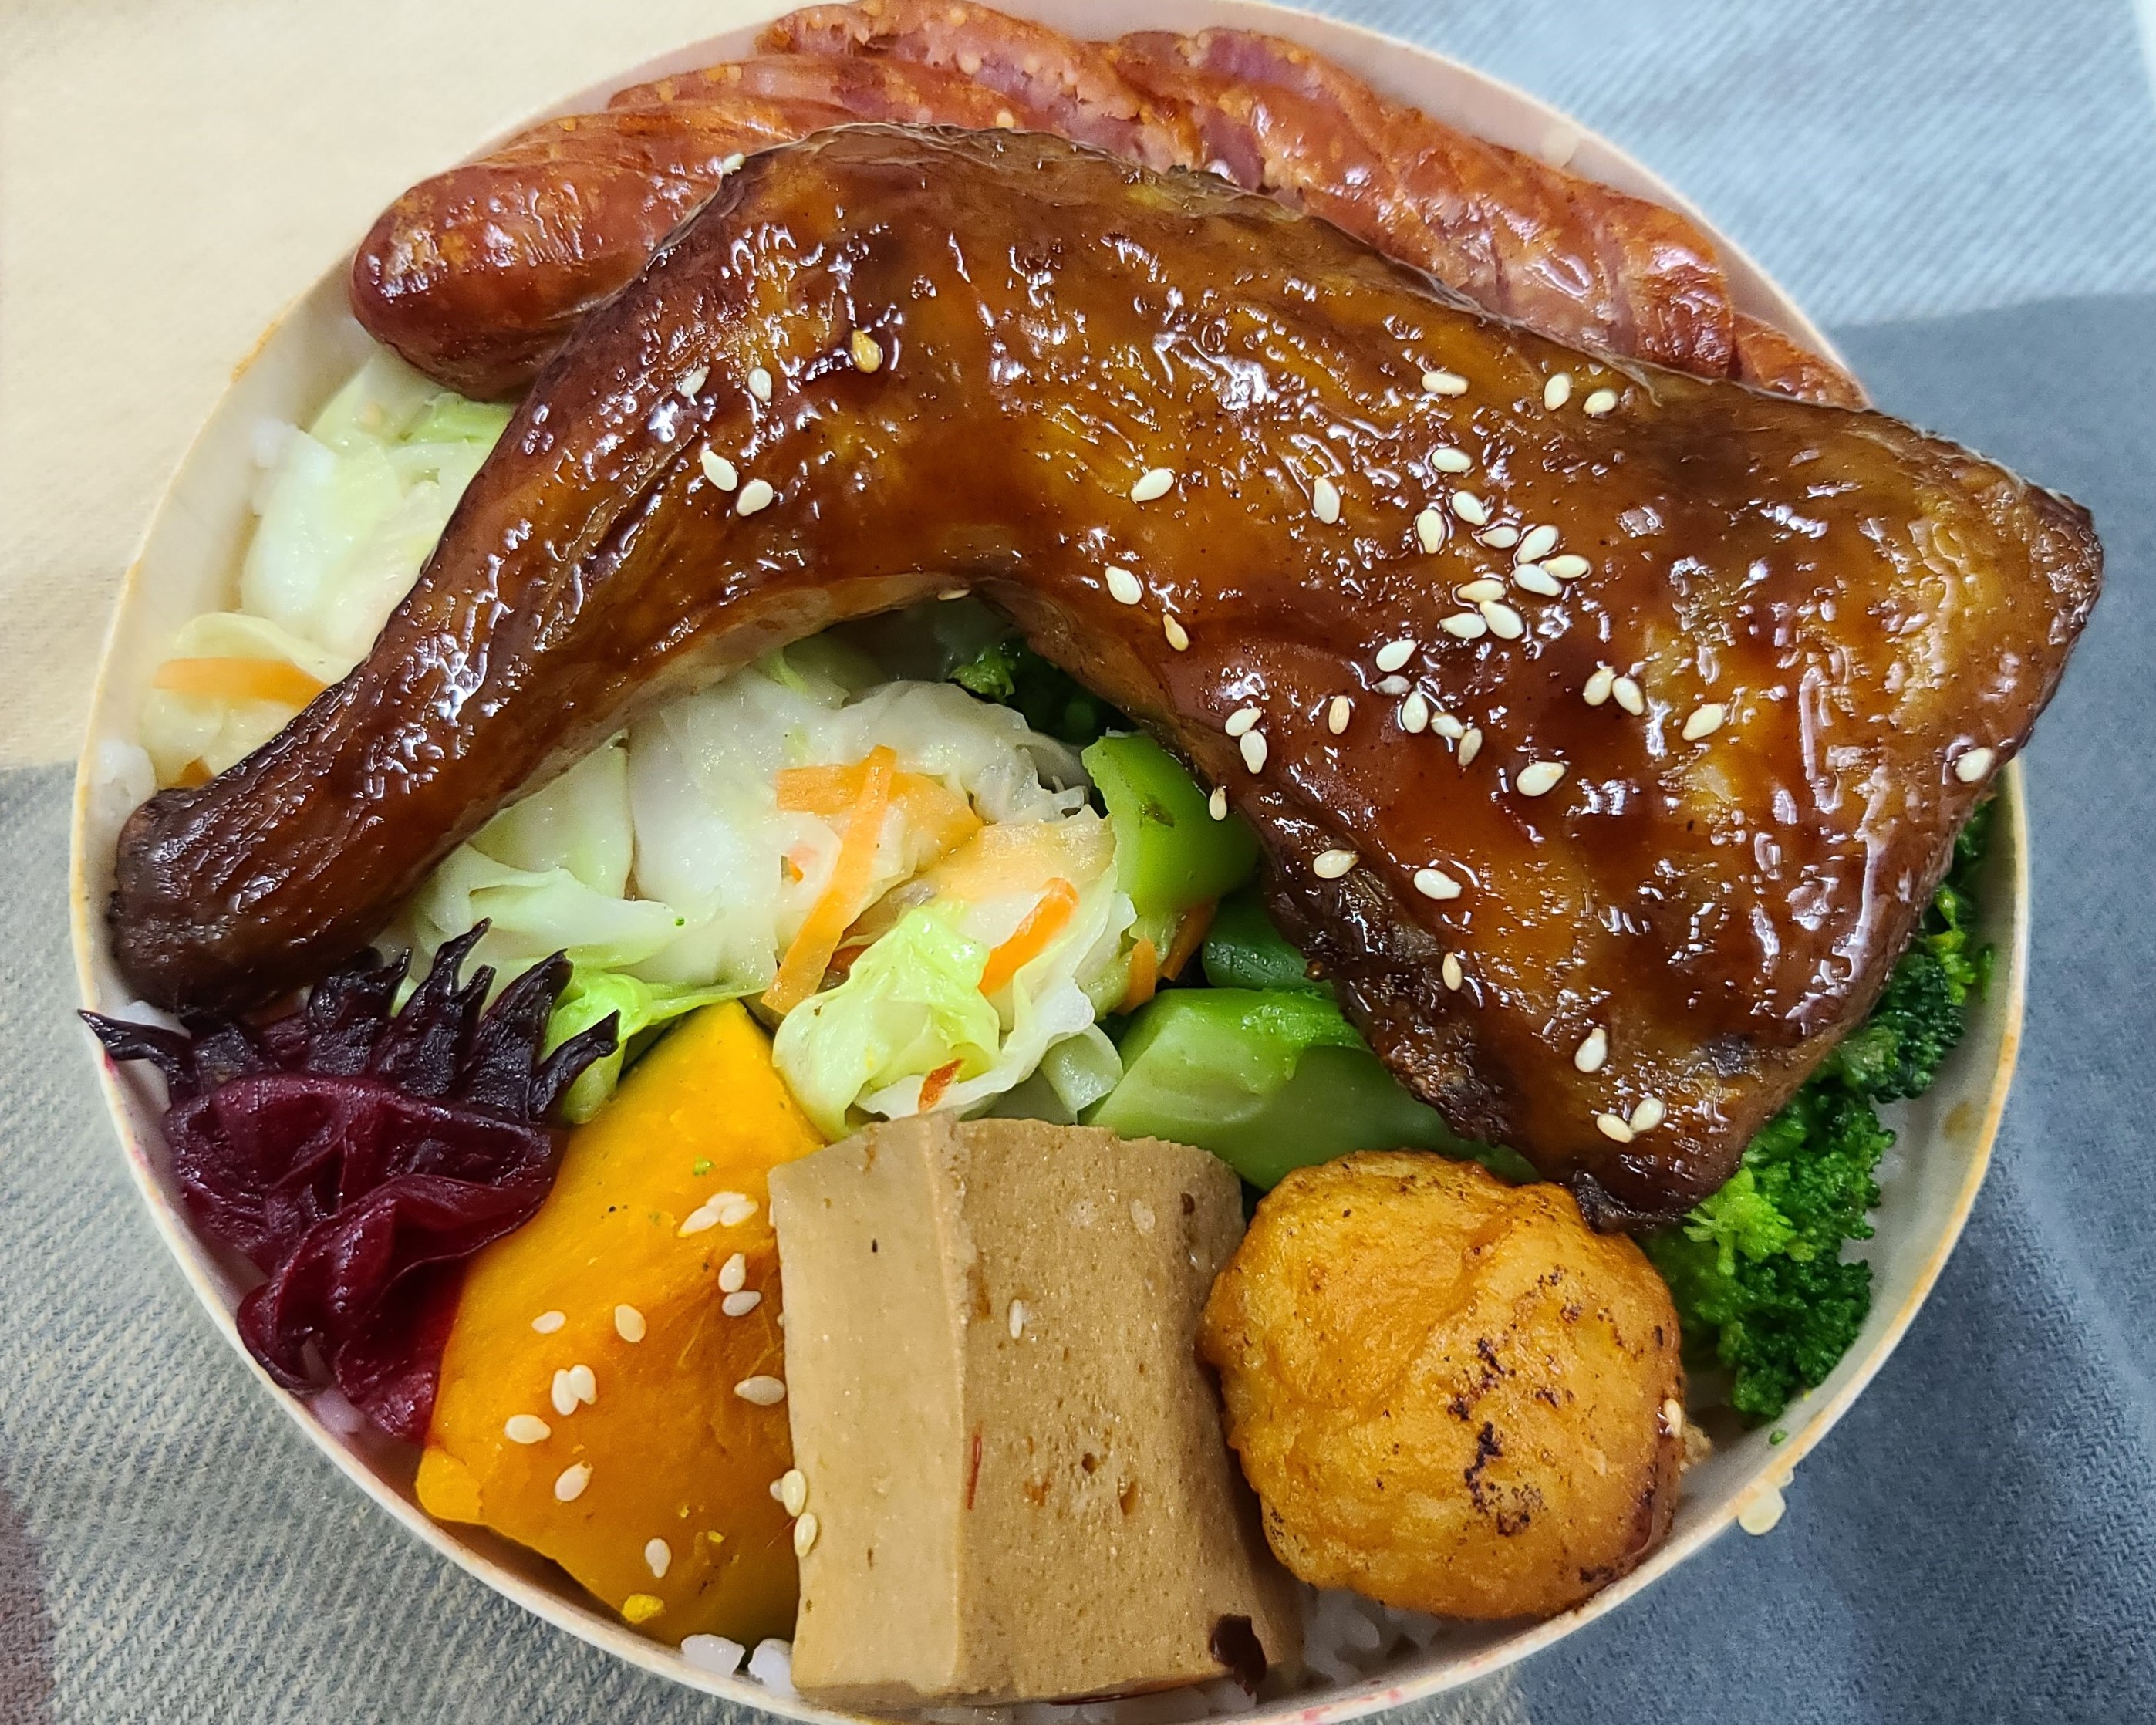 Suất cơm hộp “Cơm đùi gà đặc biệt Đài Đông”. (Nguồn ảnh: Bộ Giao thông Đài Loan)